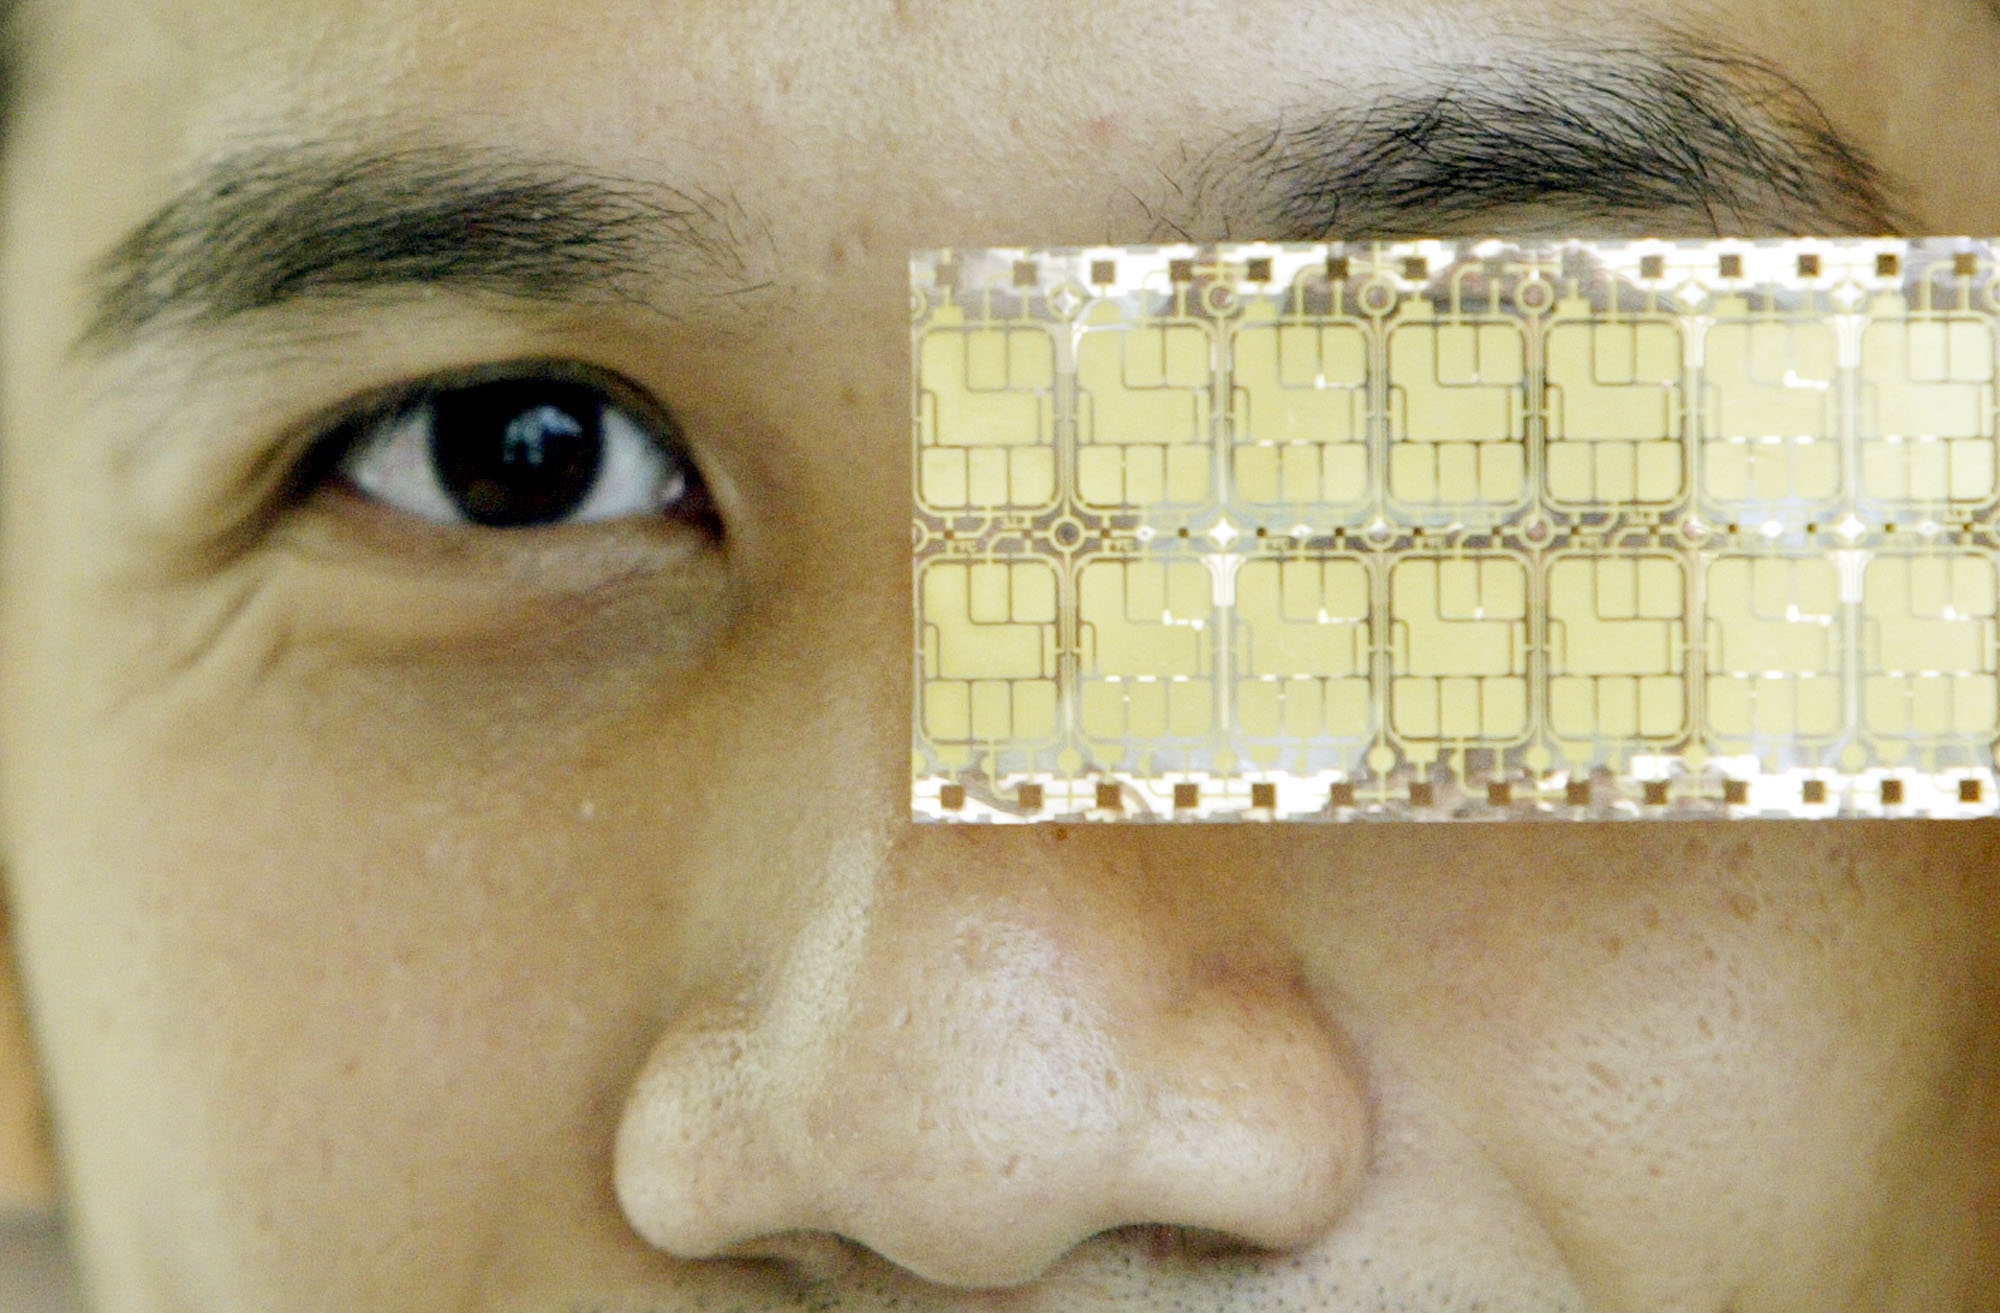 Ett biometriskt chip som är gjort för att monteras in i pass. Det kan innehålla information som fingeravtryck, irismönster och fotografier av passets innehavare. 